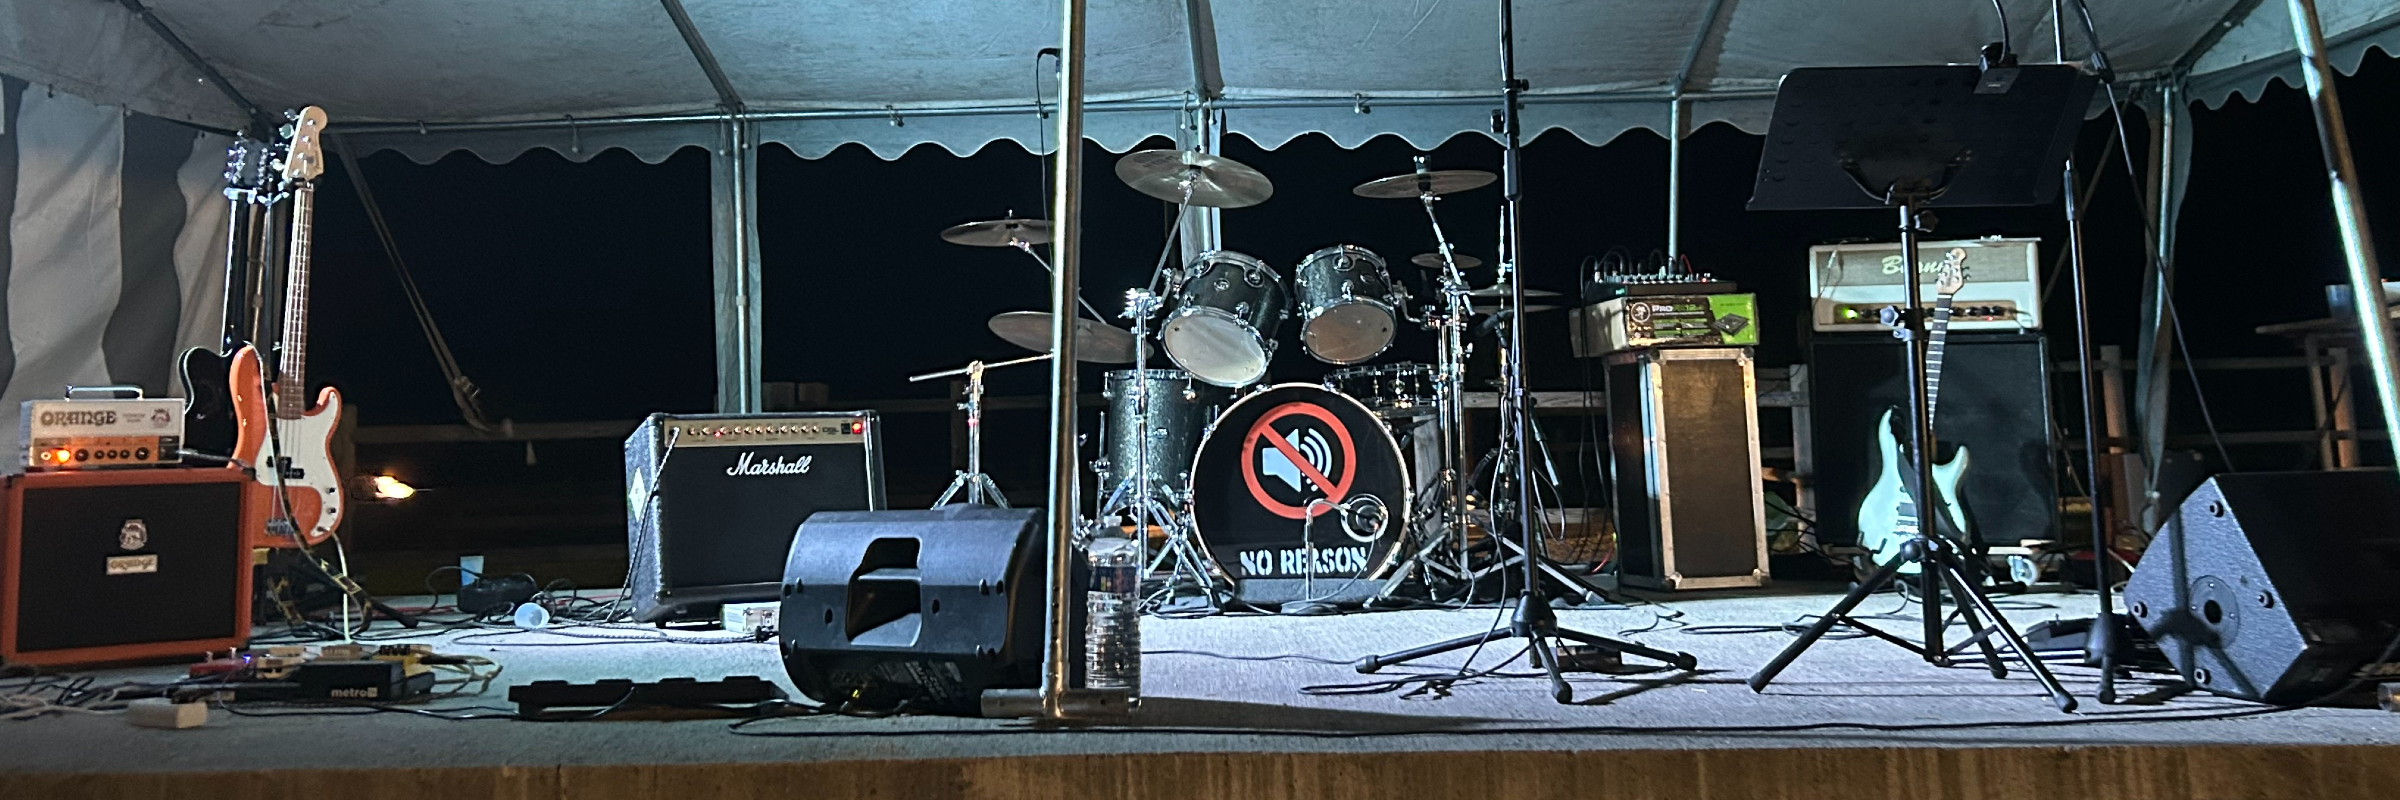 No reason, groupe de musique Rock en représentation à Loire - photo de couverture n° 2